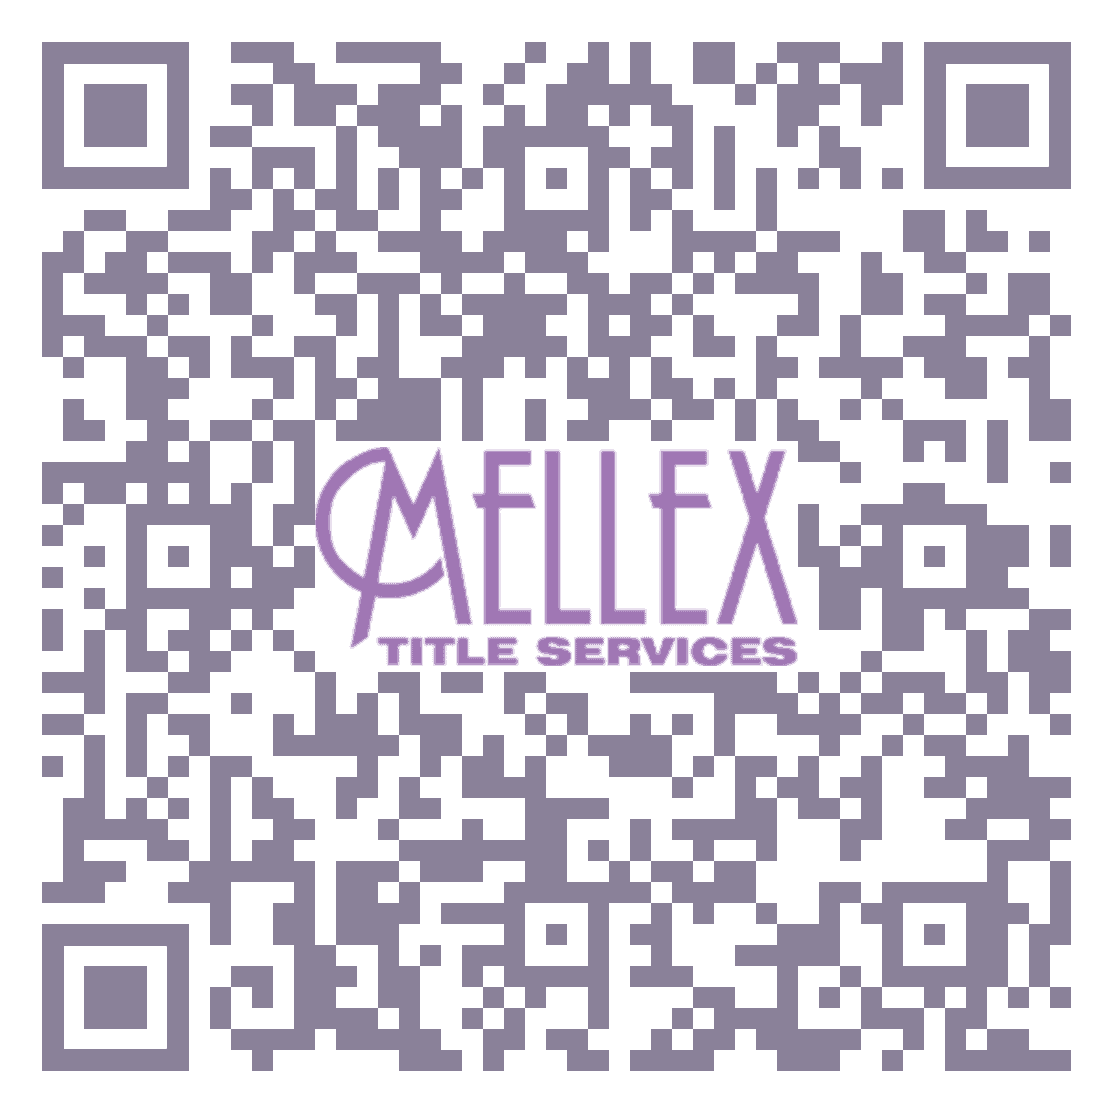 Mellex Title Services QR Code